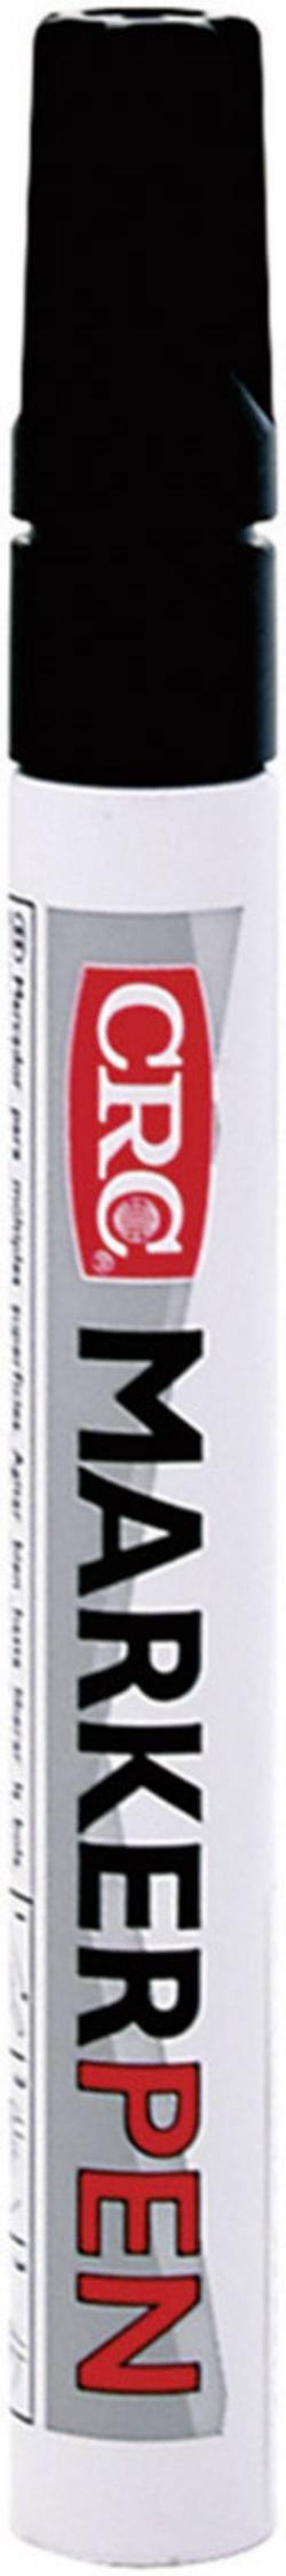 MarkerPen CRC 20365-AA, černá 10 ml